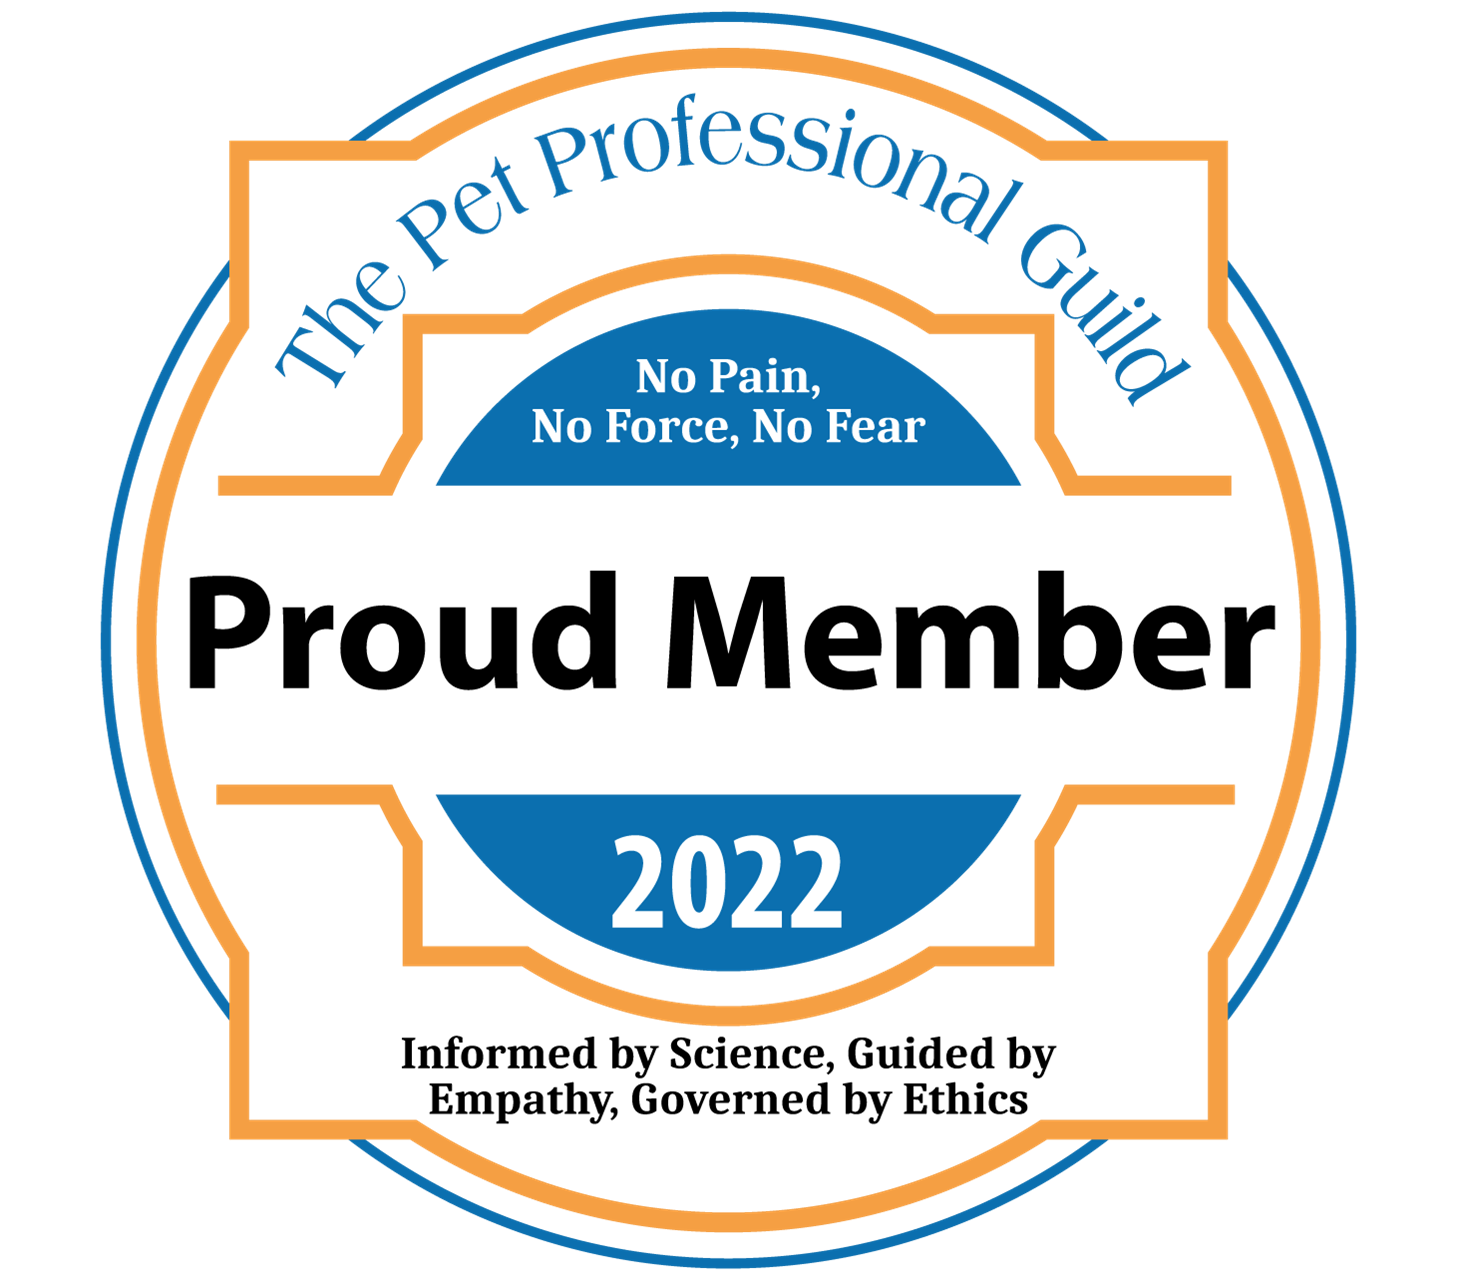 Pet Professional Guild member logo 2022